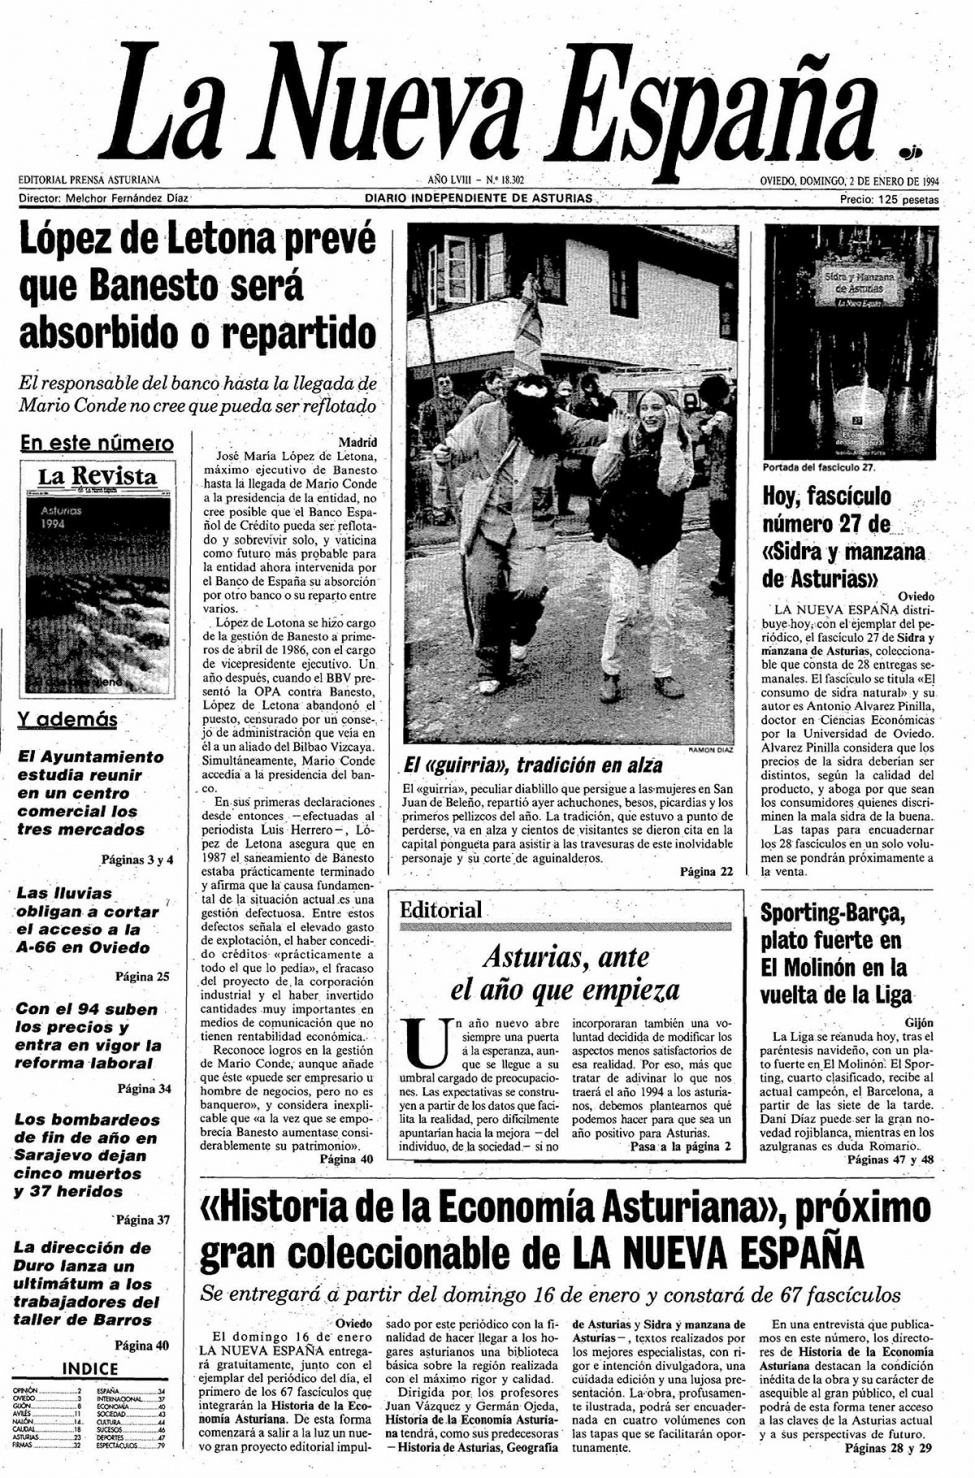 Portada del Domingo, 2 de Enero de 1994